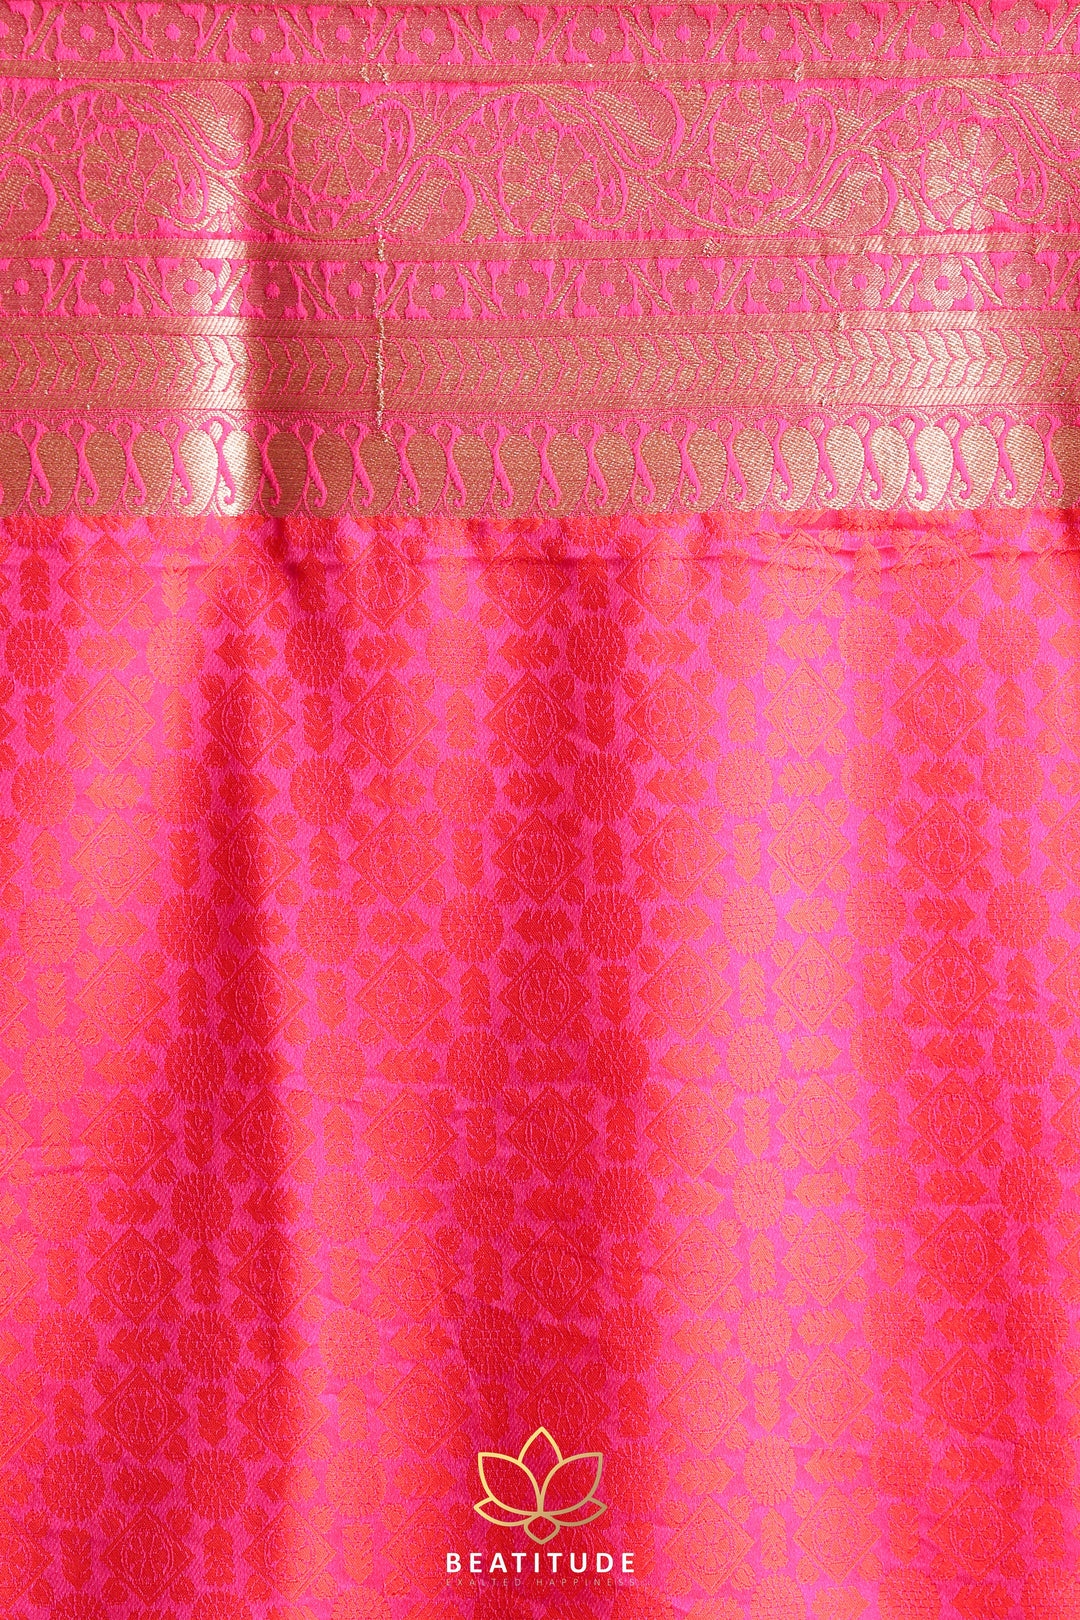 Beatitude Orangeish Pink Banarasi Saree with Unstitched Blouse